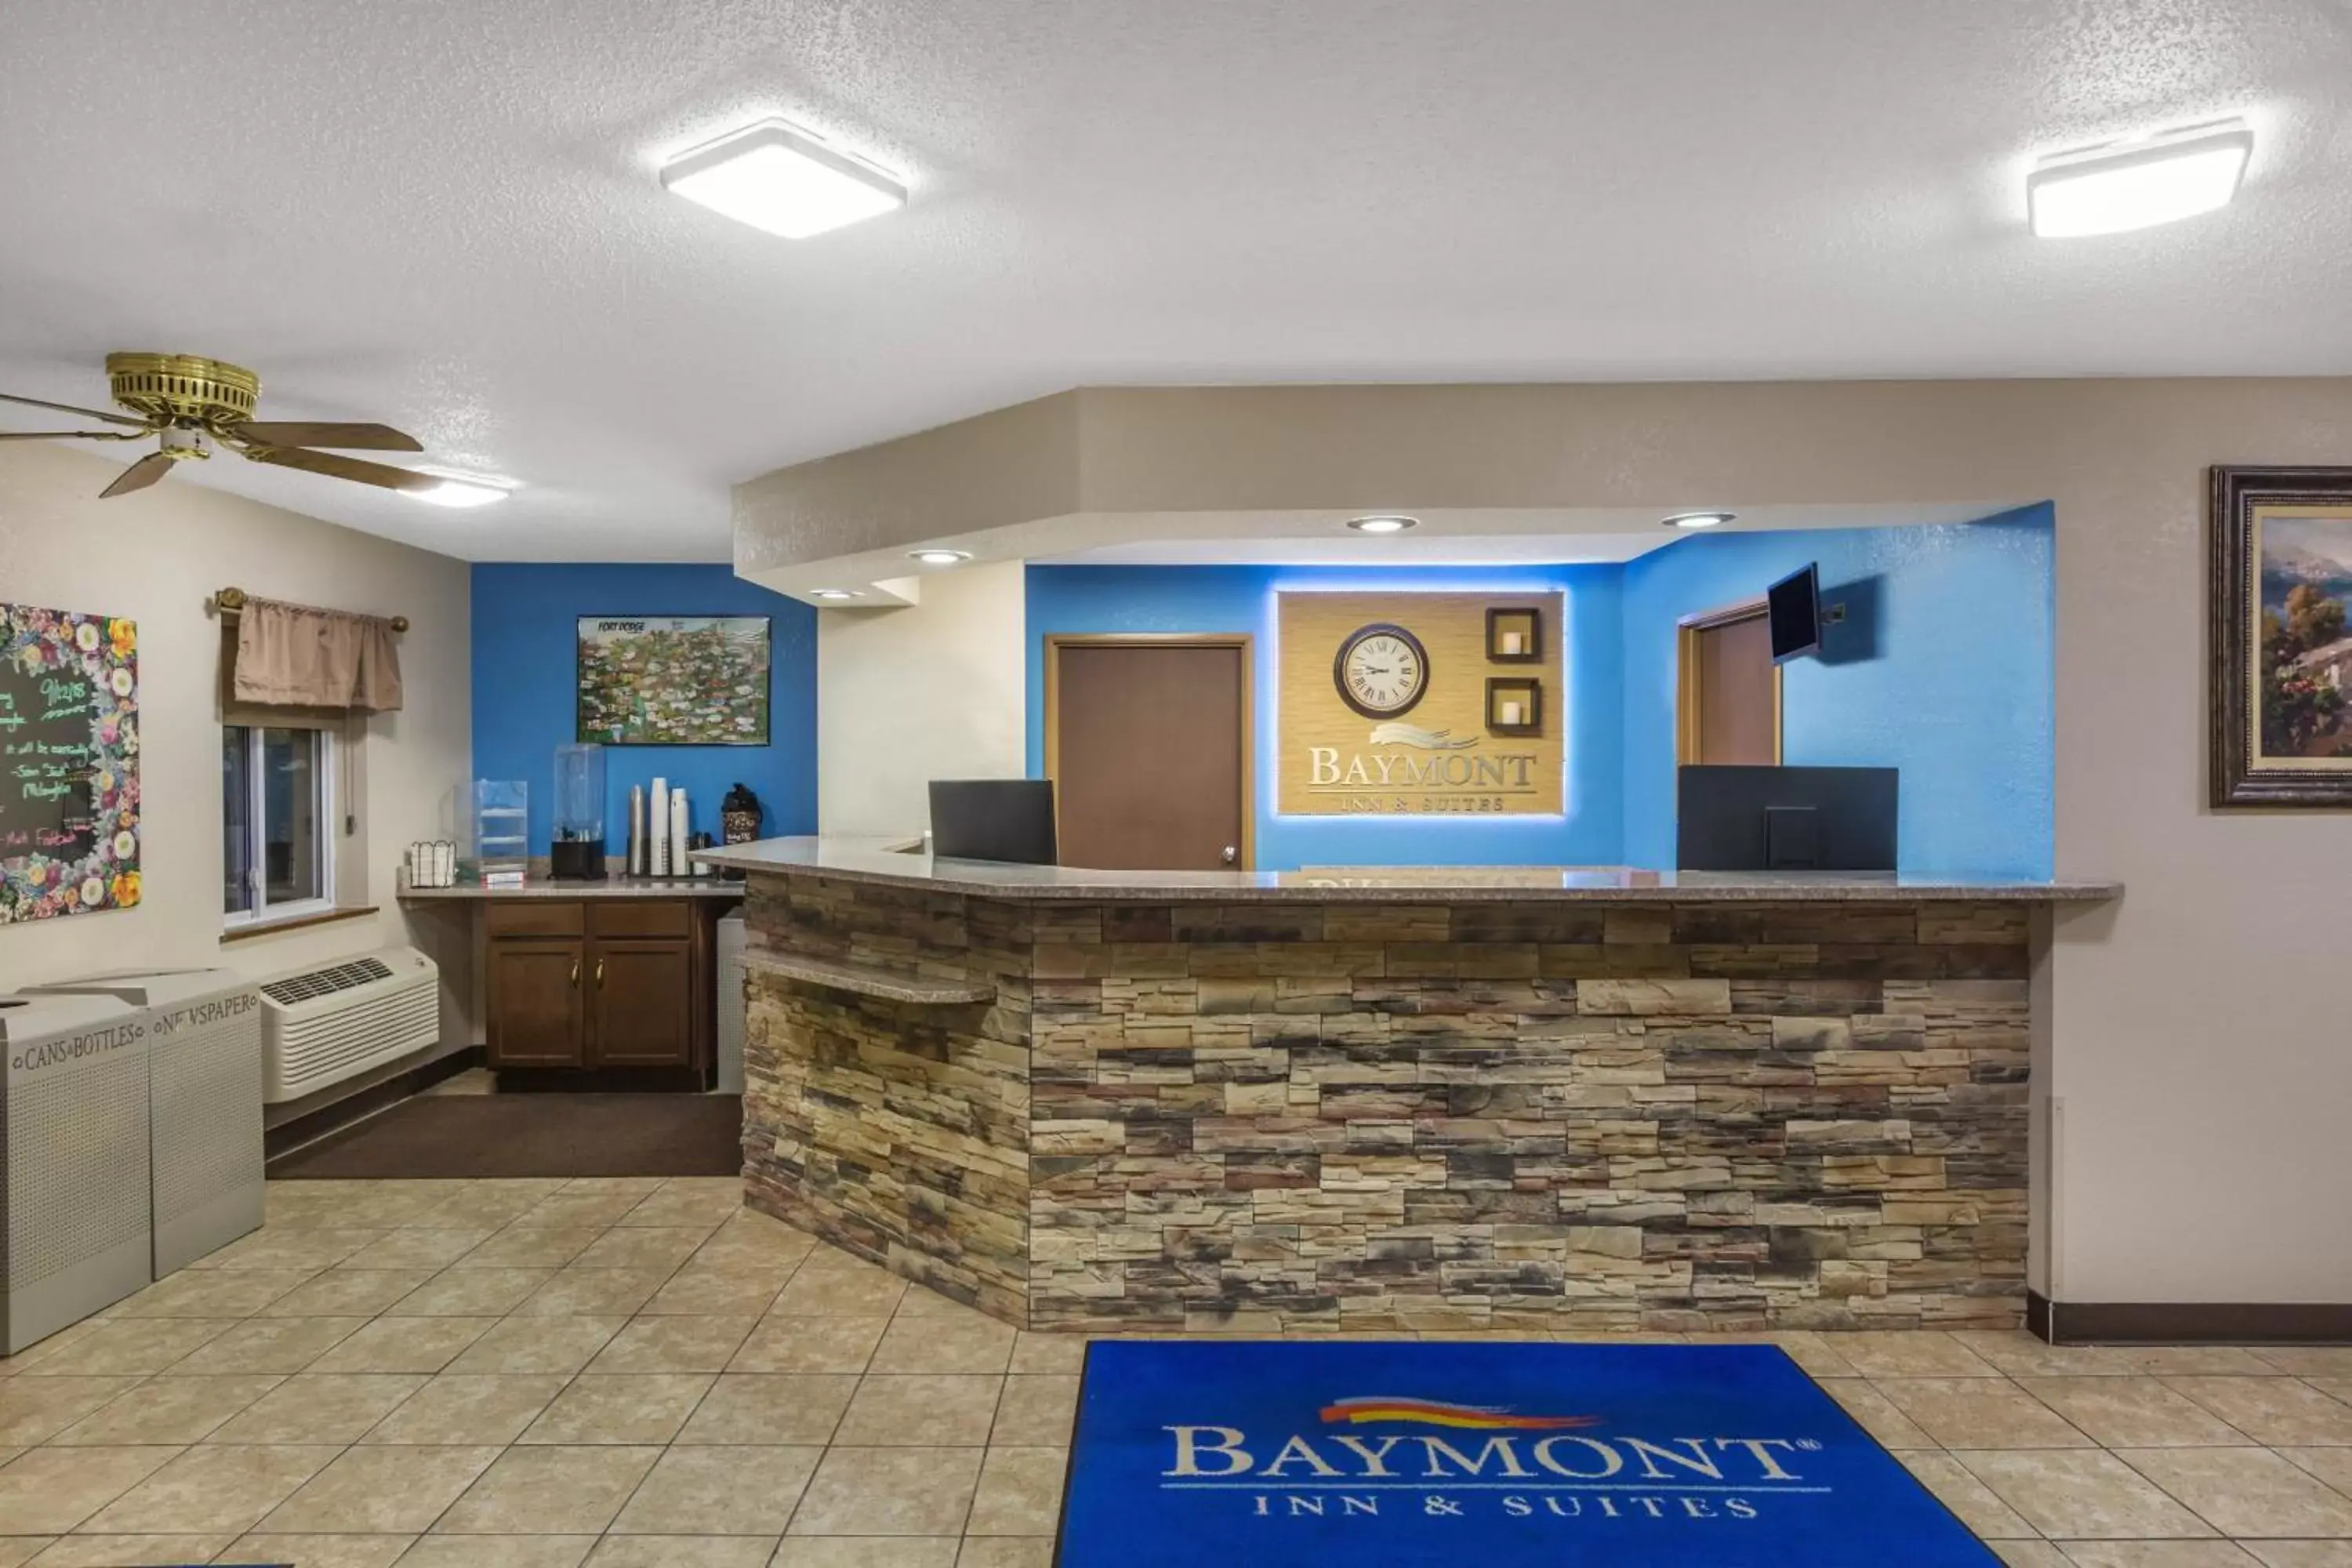 Lobby or reception, Lobby/Reception in Baymont by Wyndham Fort Dodge